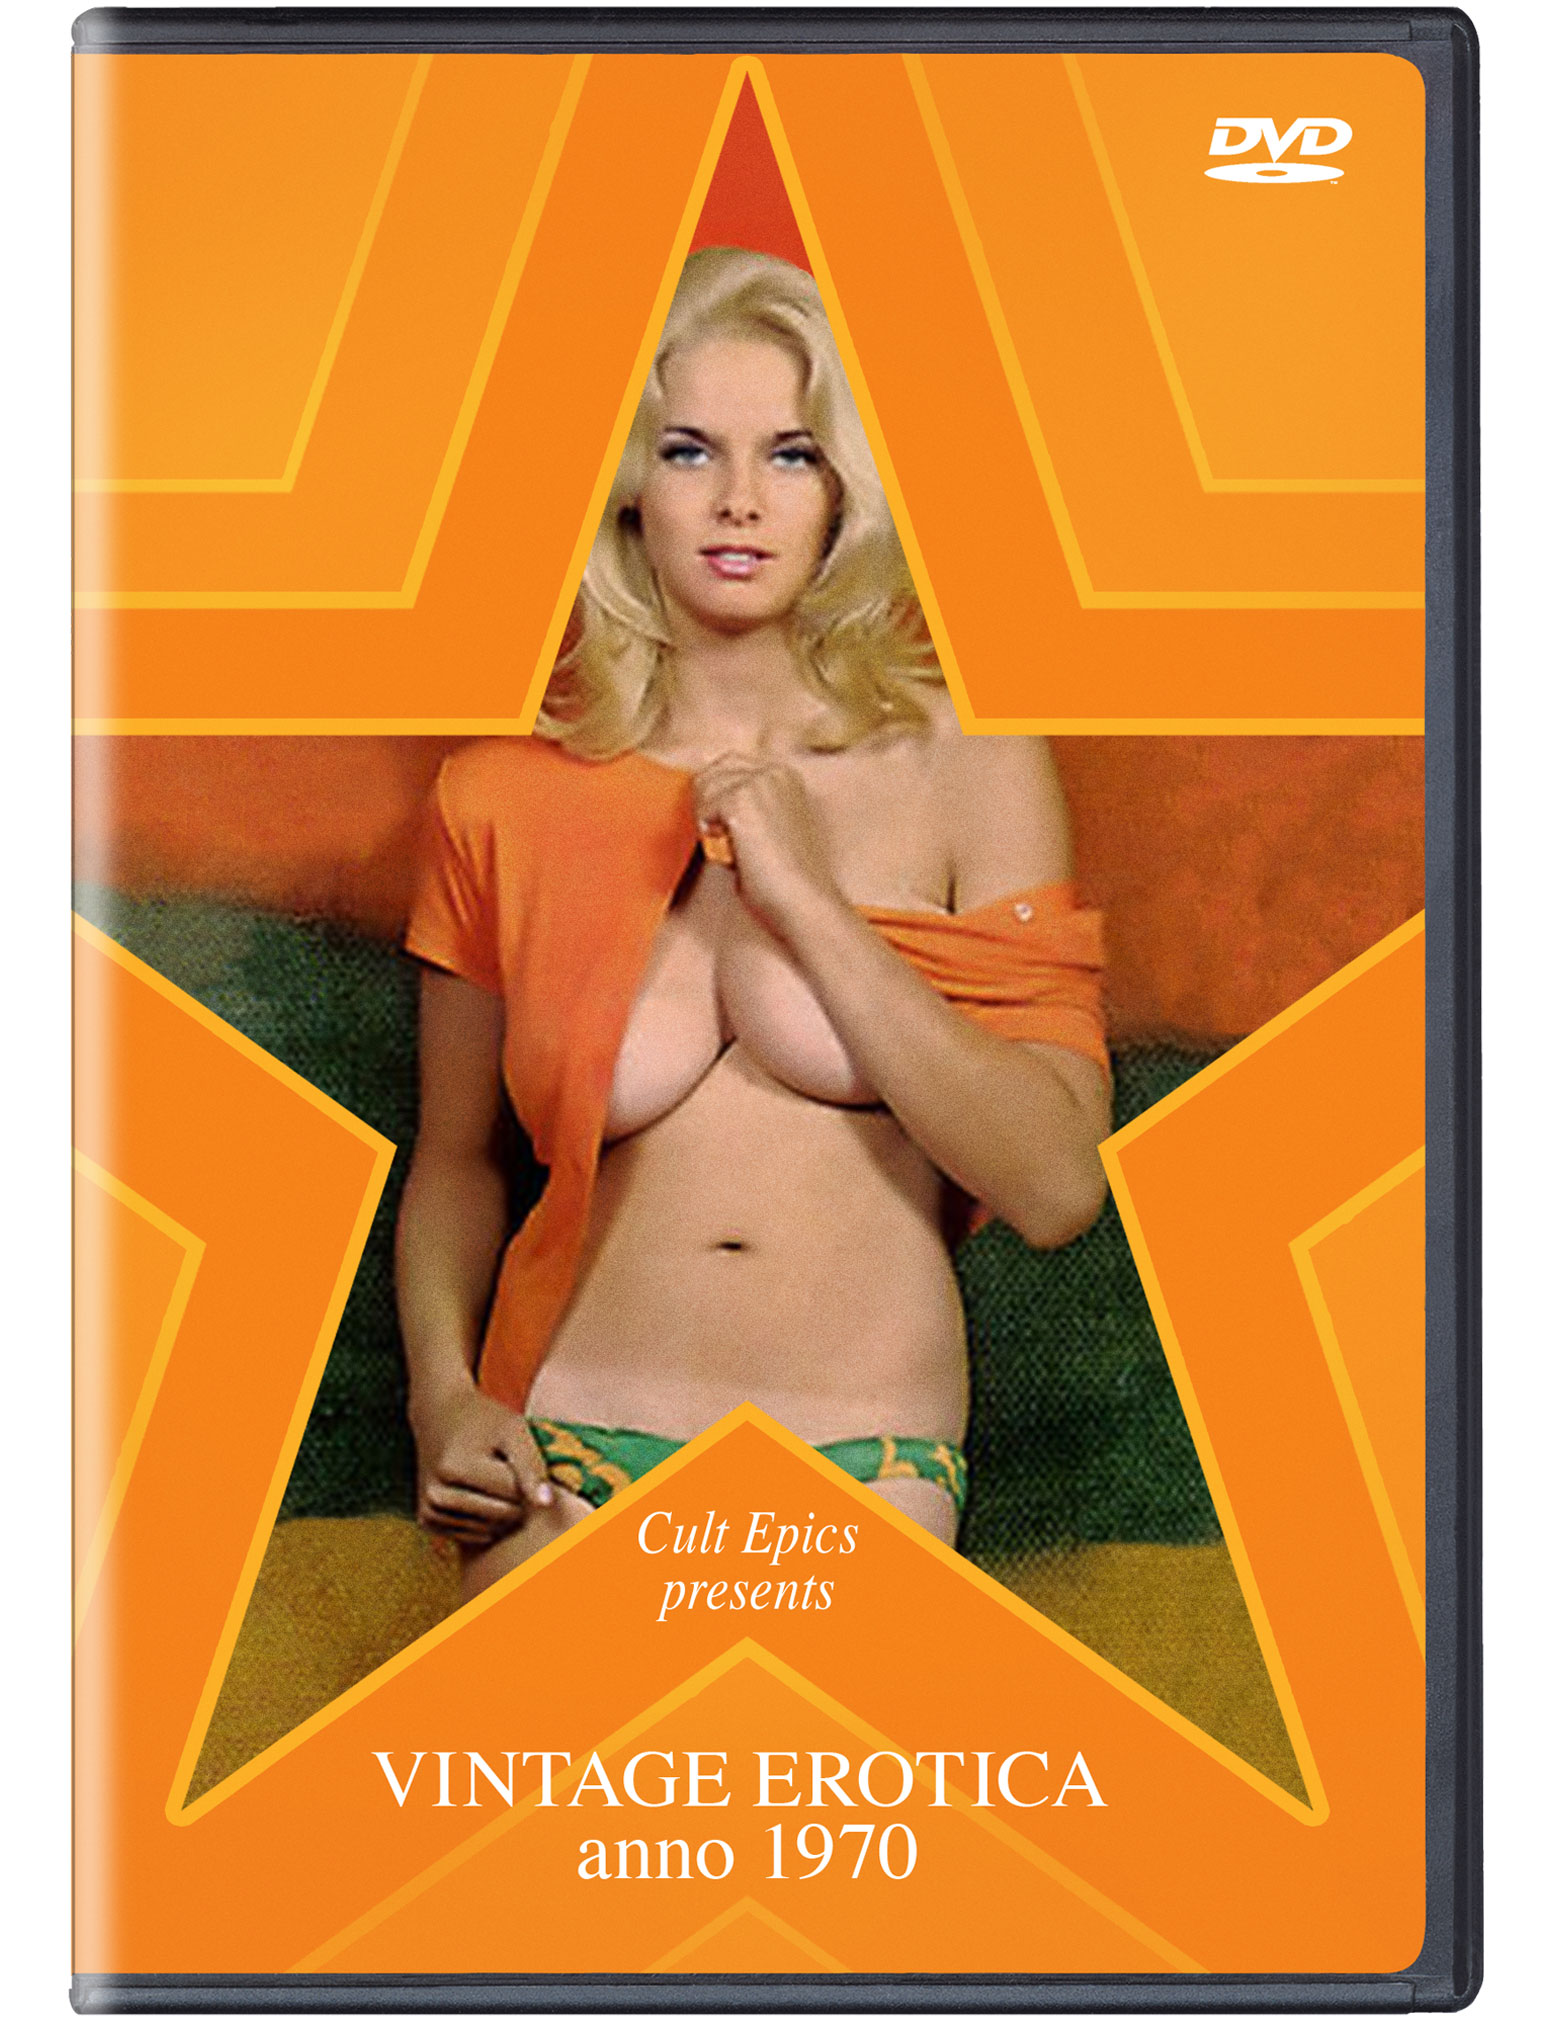 Vintage Erotica Anno 1970 â€“ Cult Epics